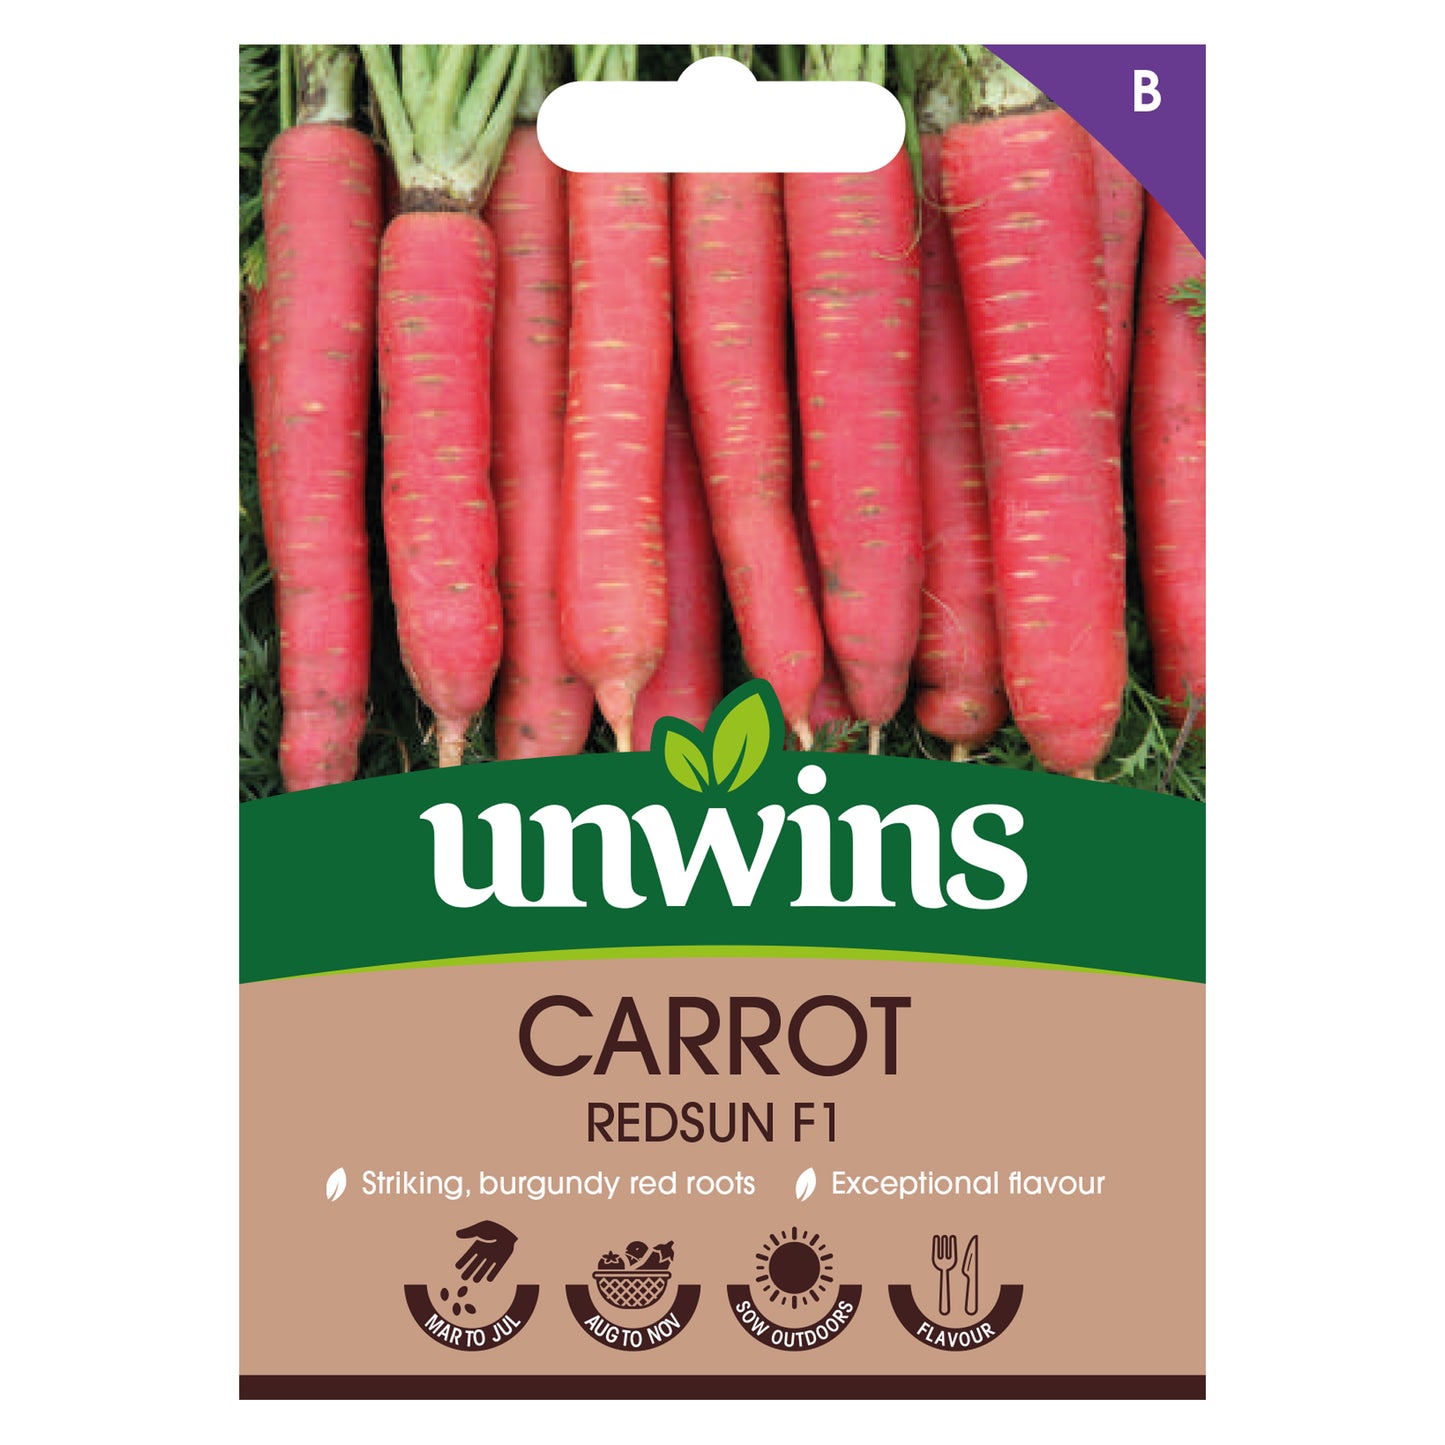 Unwins Carrot Redsun F1 Seeds Front